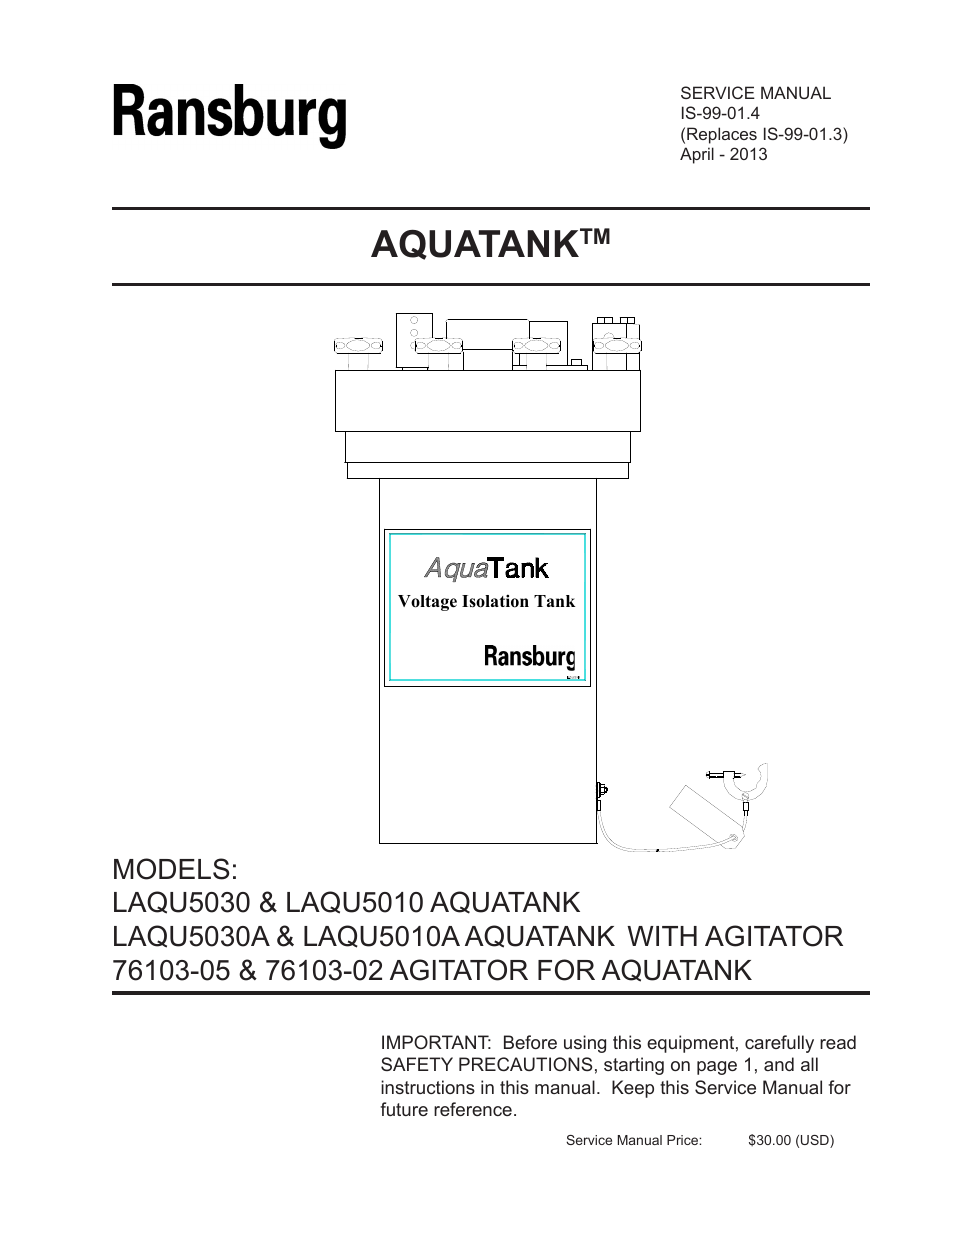 AquaTank